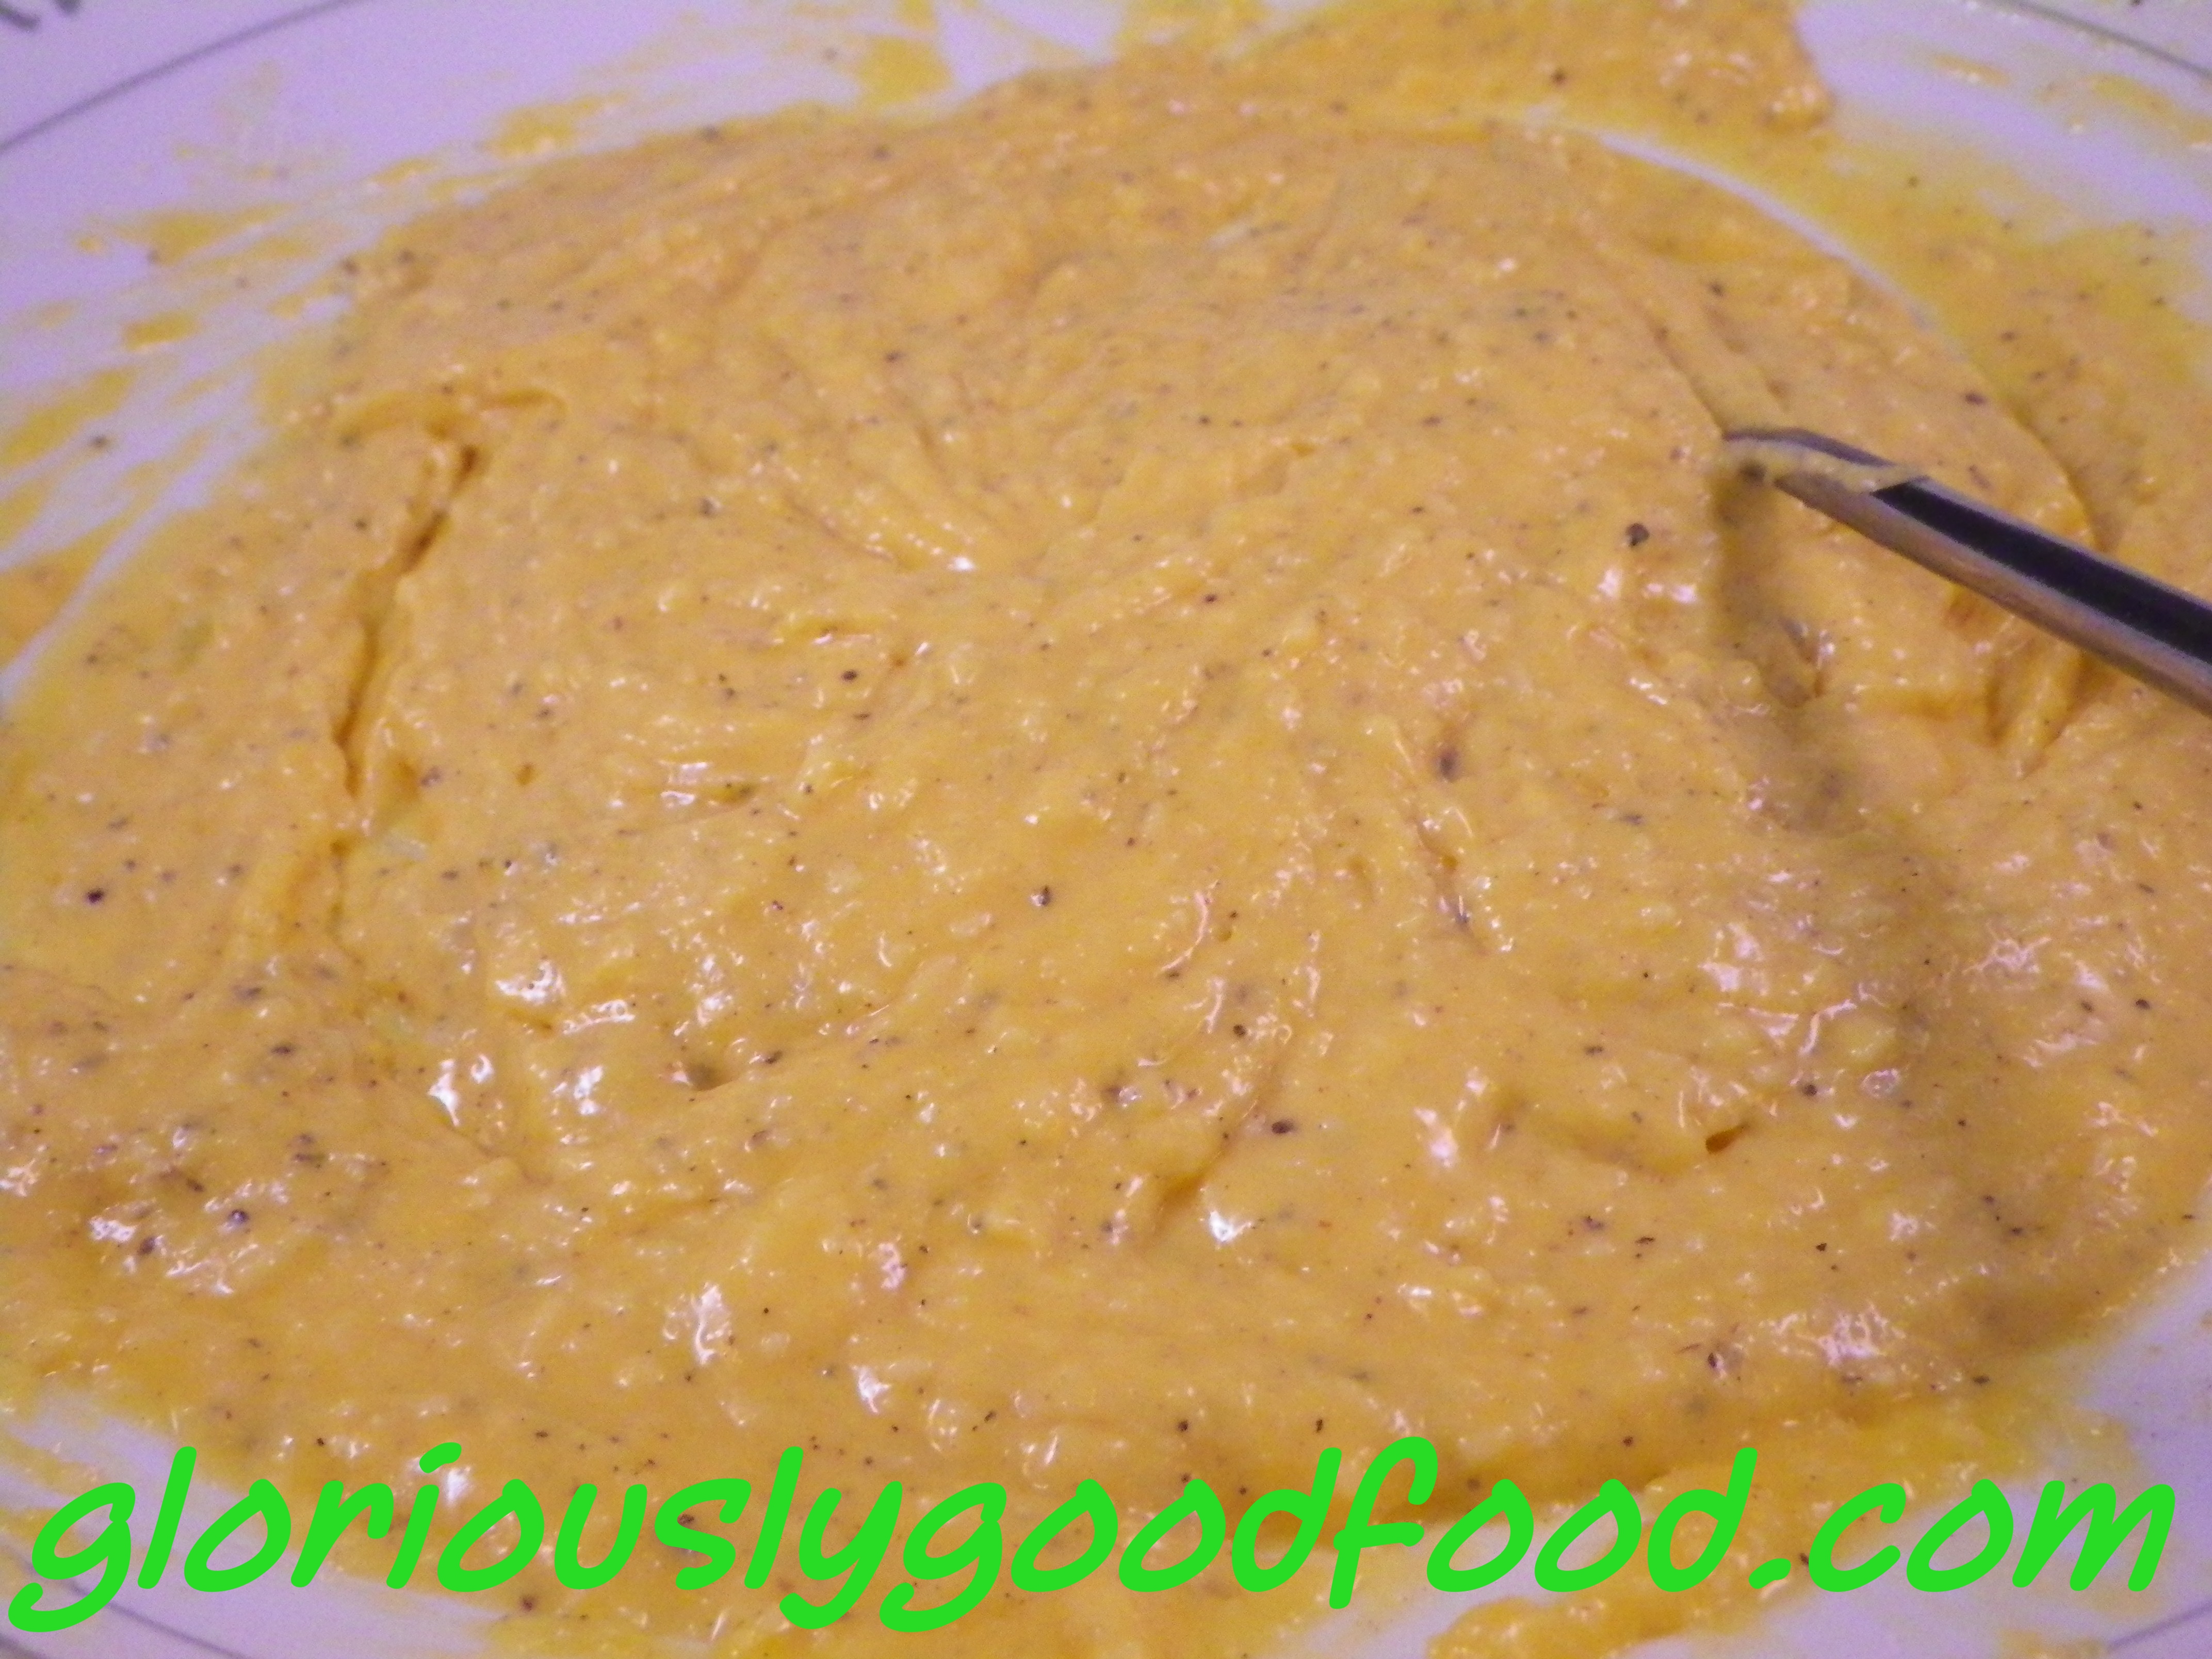 Carbonara Sauce | egg yolk and pecorino cheese